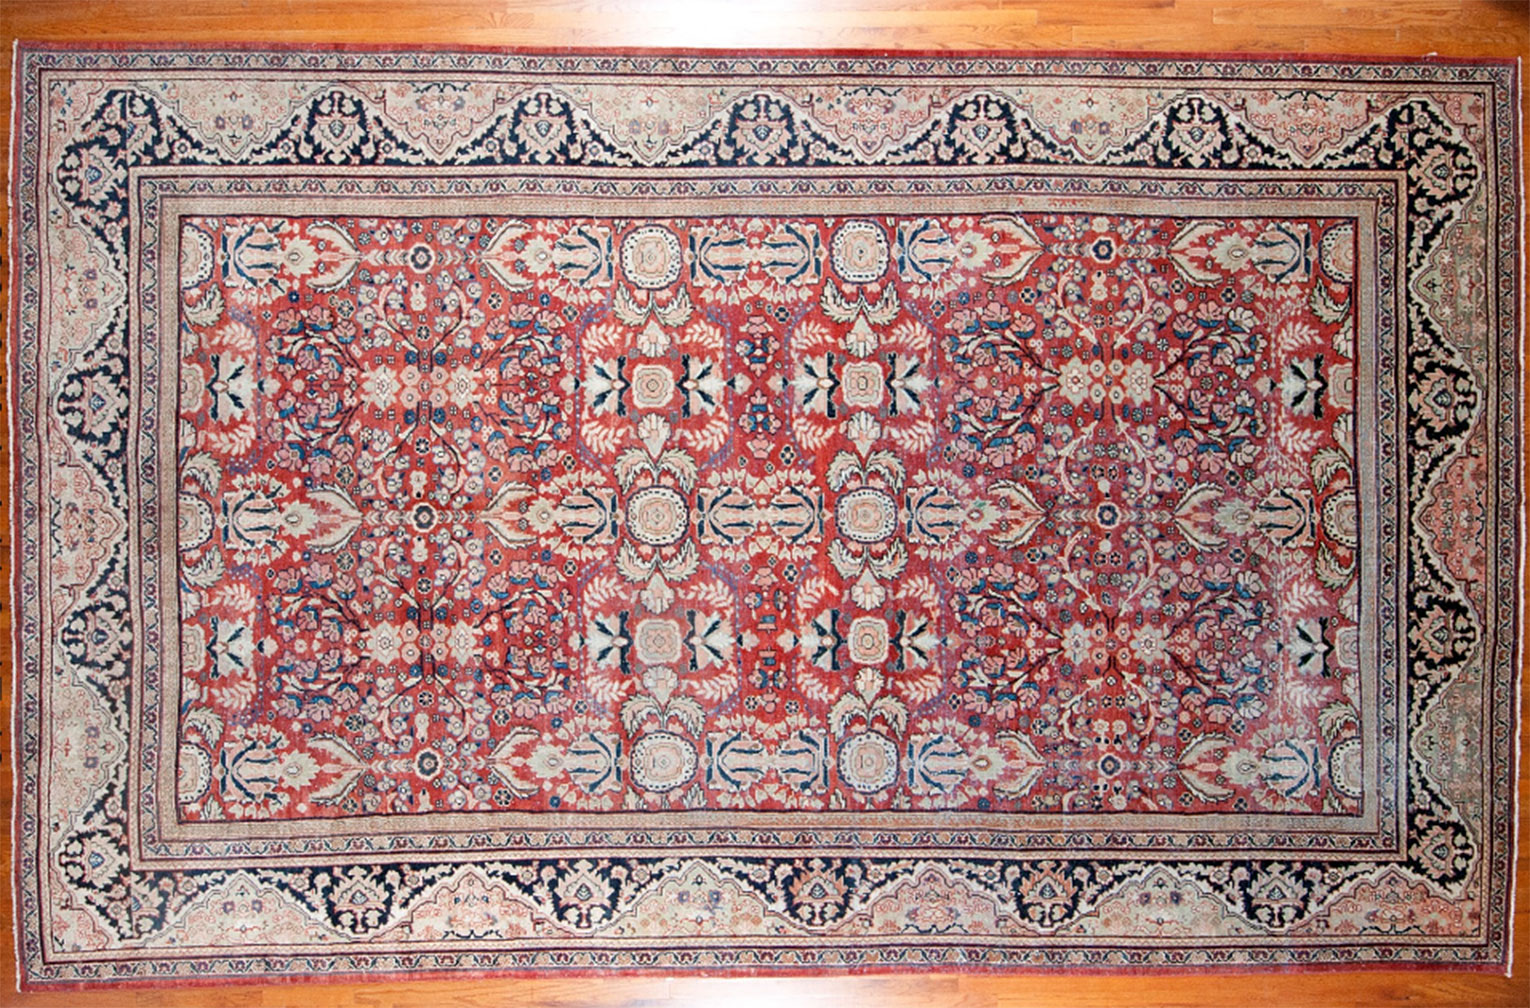 Antique mahal Carpet - # 52284